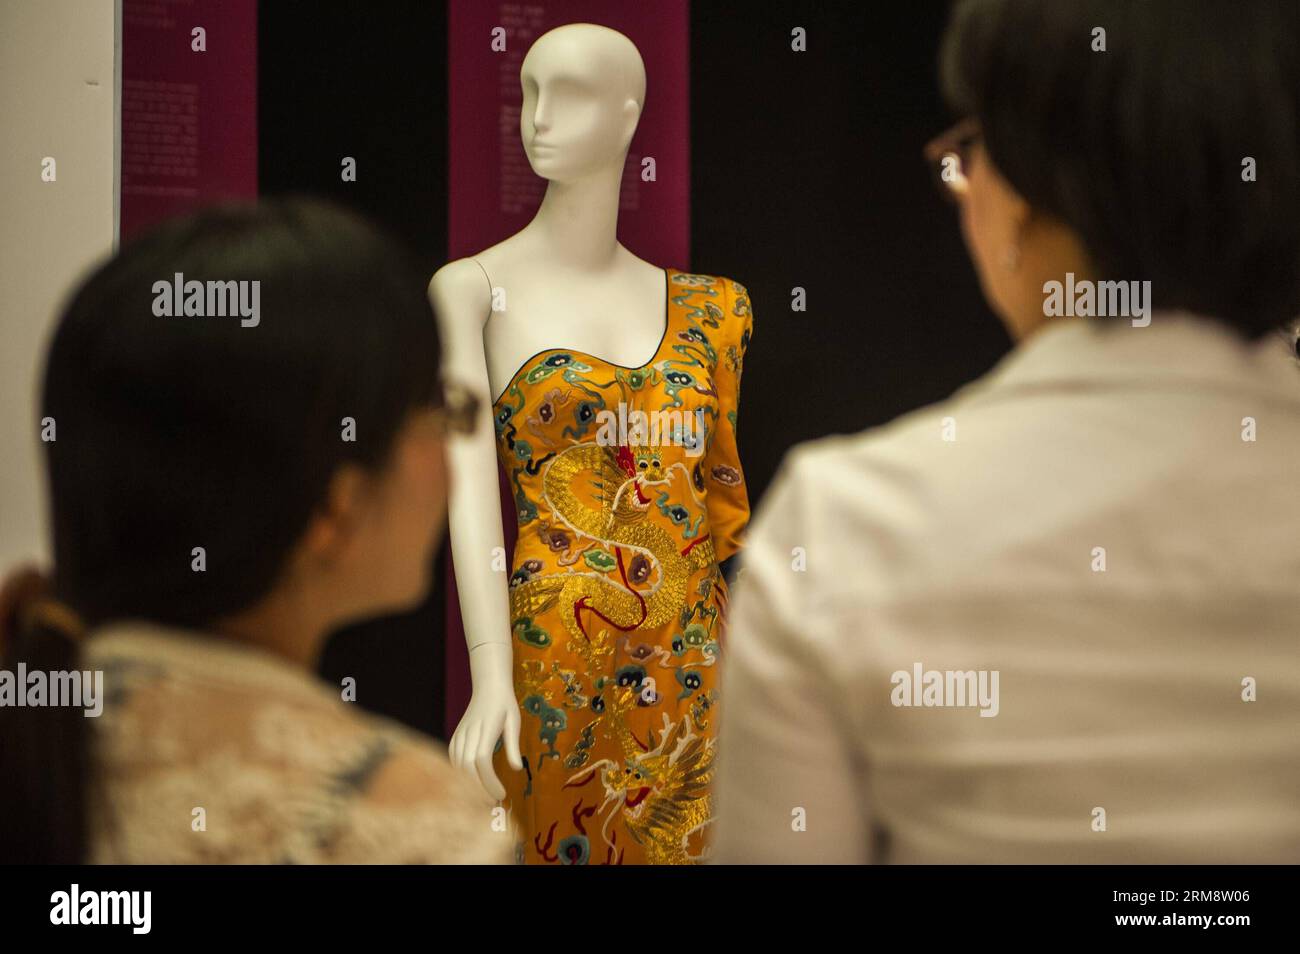 (140427) -- SHENZHEN, 26 avril 2014 (Xinhua) -- les visiteurs regardent une exposition pendant la réflexion du temps - Art de la mode en Chine 1993-2012 à Shenzhen, dans la province du Guangdong du sud de la Chine, le 26 avril 2014. L'exposition, qui présente plus de 100 œuvres créatives de la mode créées par 70 designers chinois au cours des 20 dernières années, est consacrée à présenter le développement global du design de mode chinois et les concepts créatifs. (Xinhua/Mao Siqian)(wyo) CHINA-SHENZHEN-EXHIBITION-ART DE LA MODE (CN) PUBLICATIONxNOTxINxCHN Shenzhen avril 26 2014 XINHUA Visitors View to EXHIBITION pendant la réflexion Banque D'Images